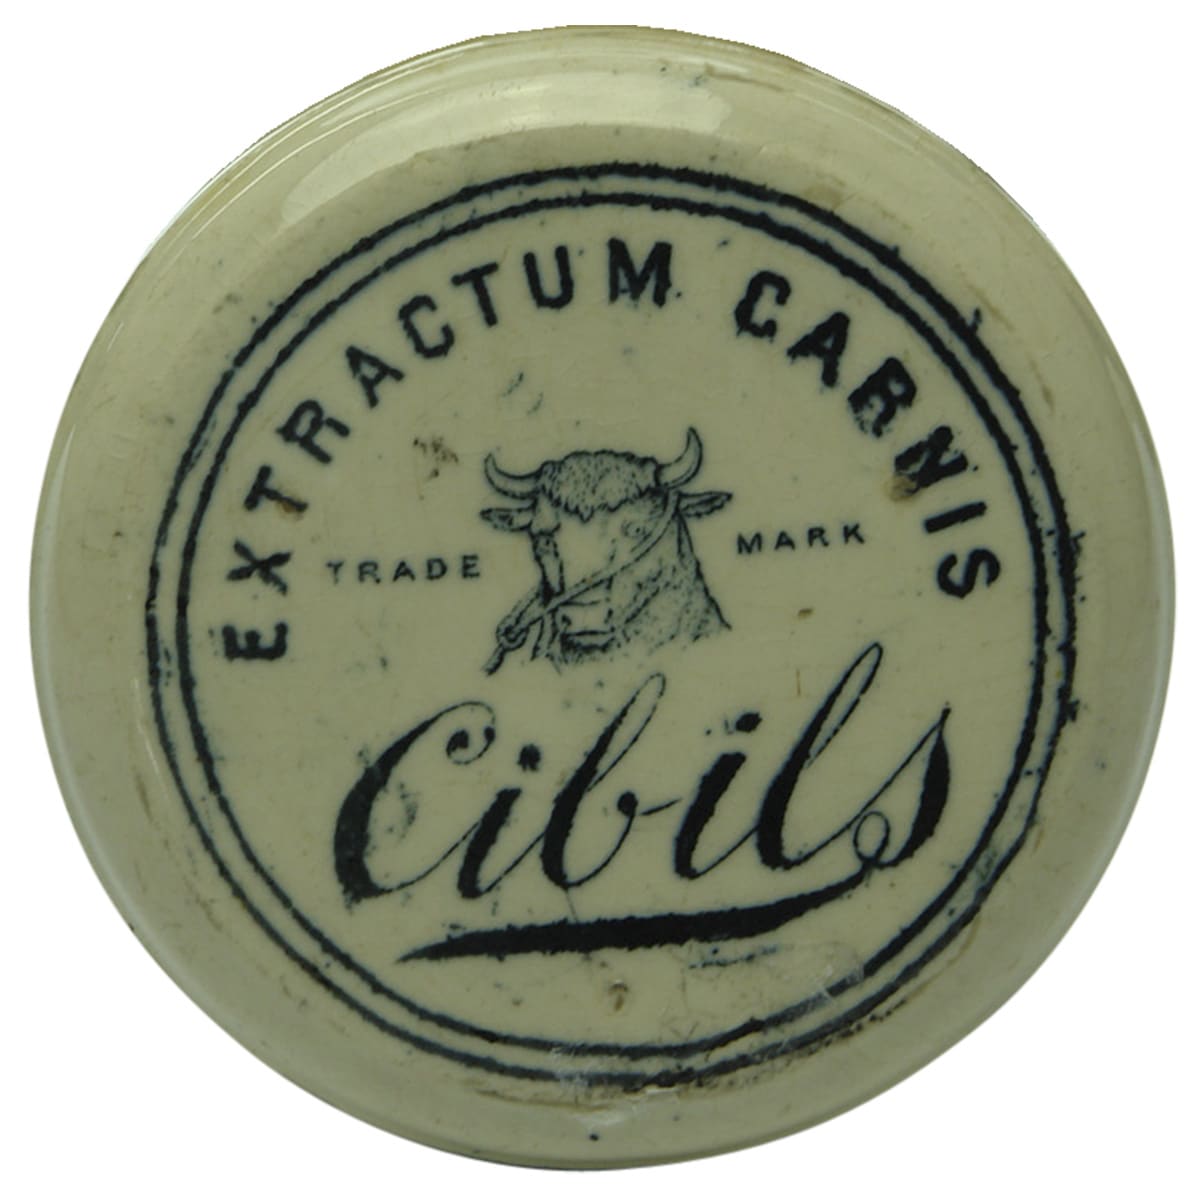 Extractum Carnis Ciblis Ceramic Pot Lid